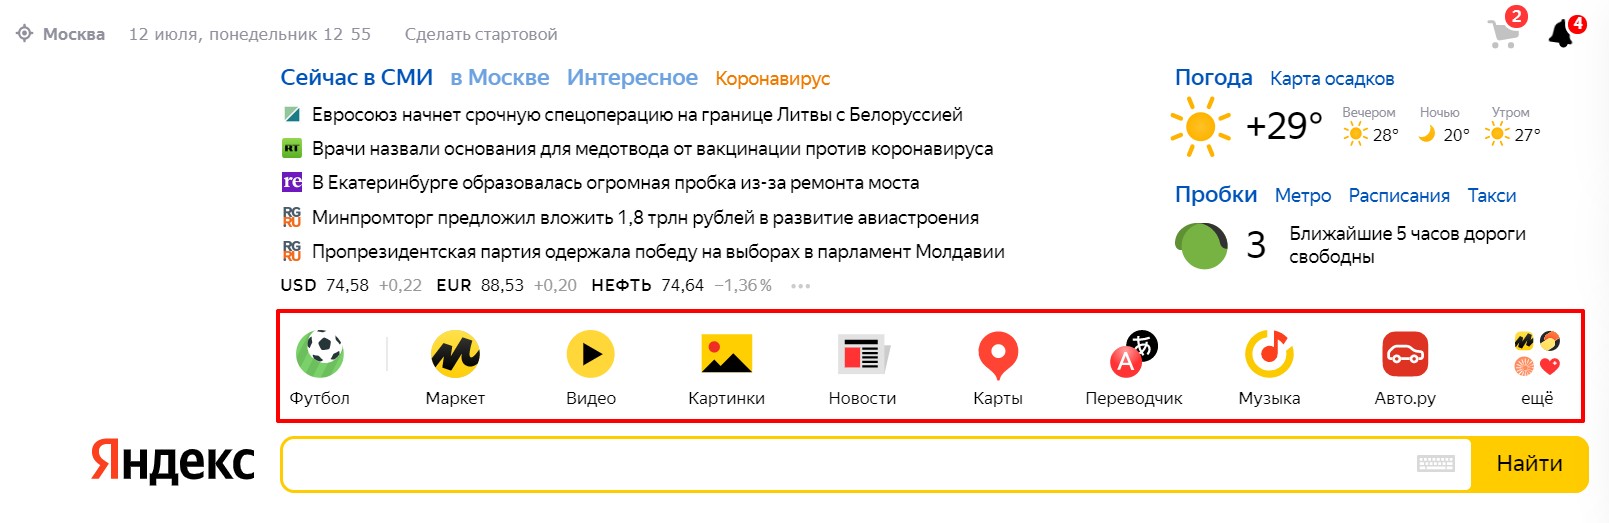 сервисы Яндекса в поиске Y1